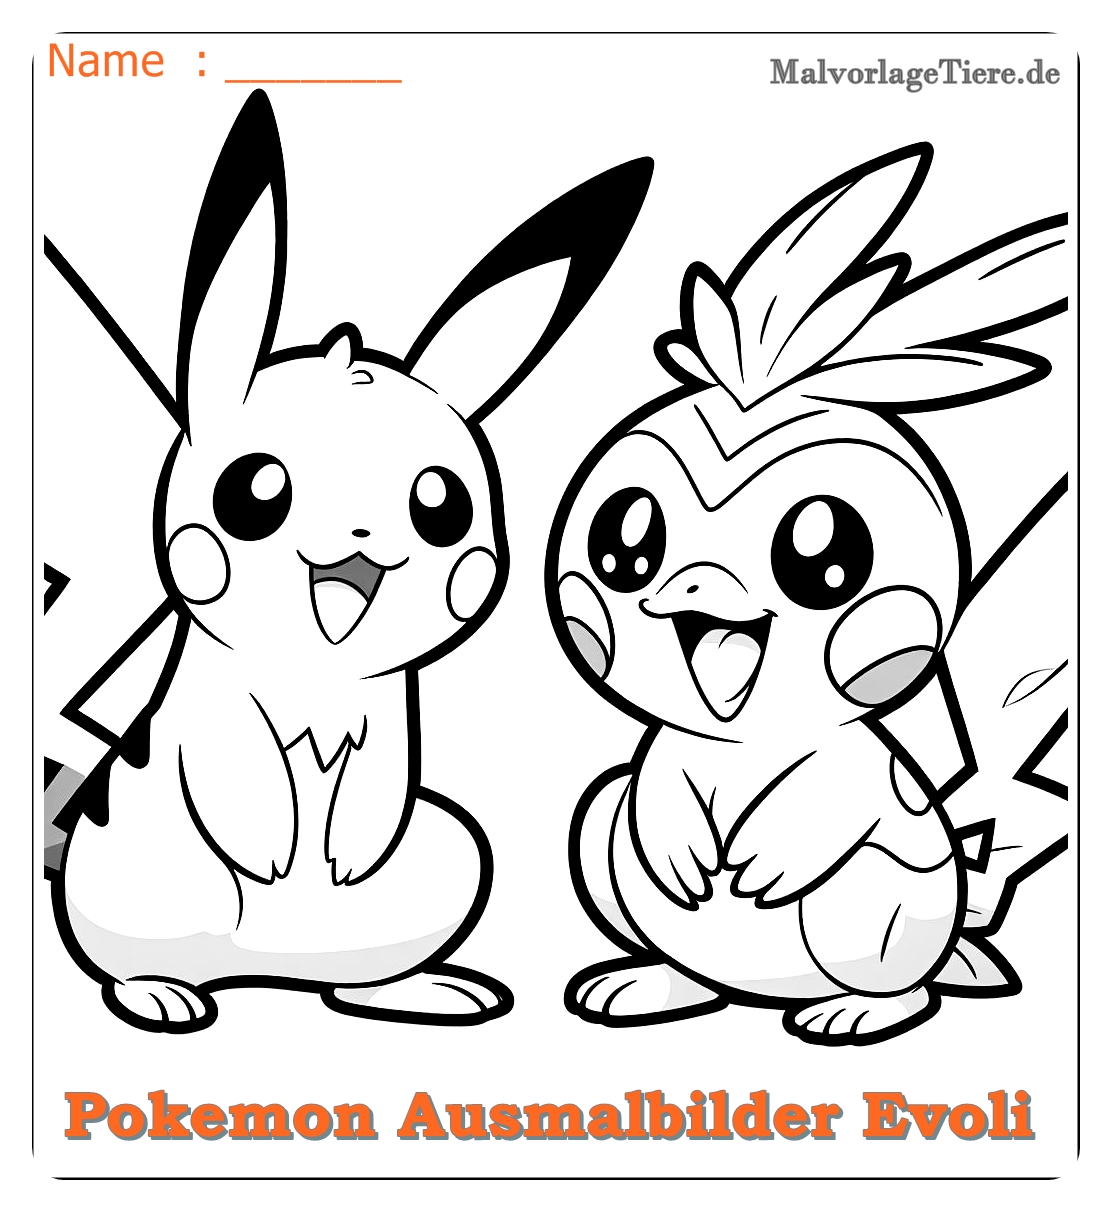 pokemon ausmalbilder evoli entwicklungen 04 by malvorlagetiere.de